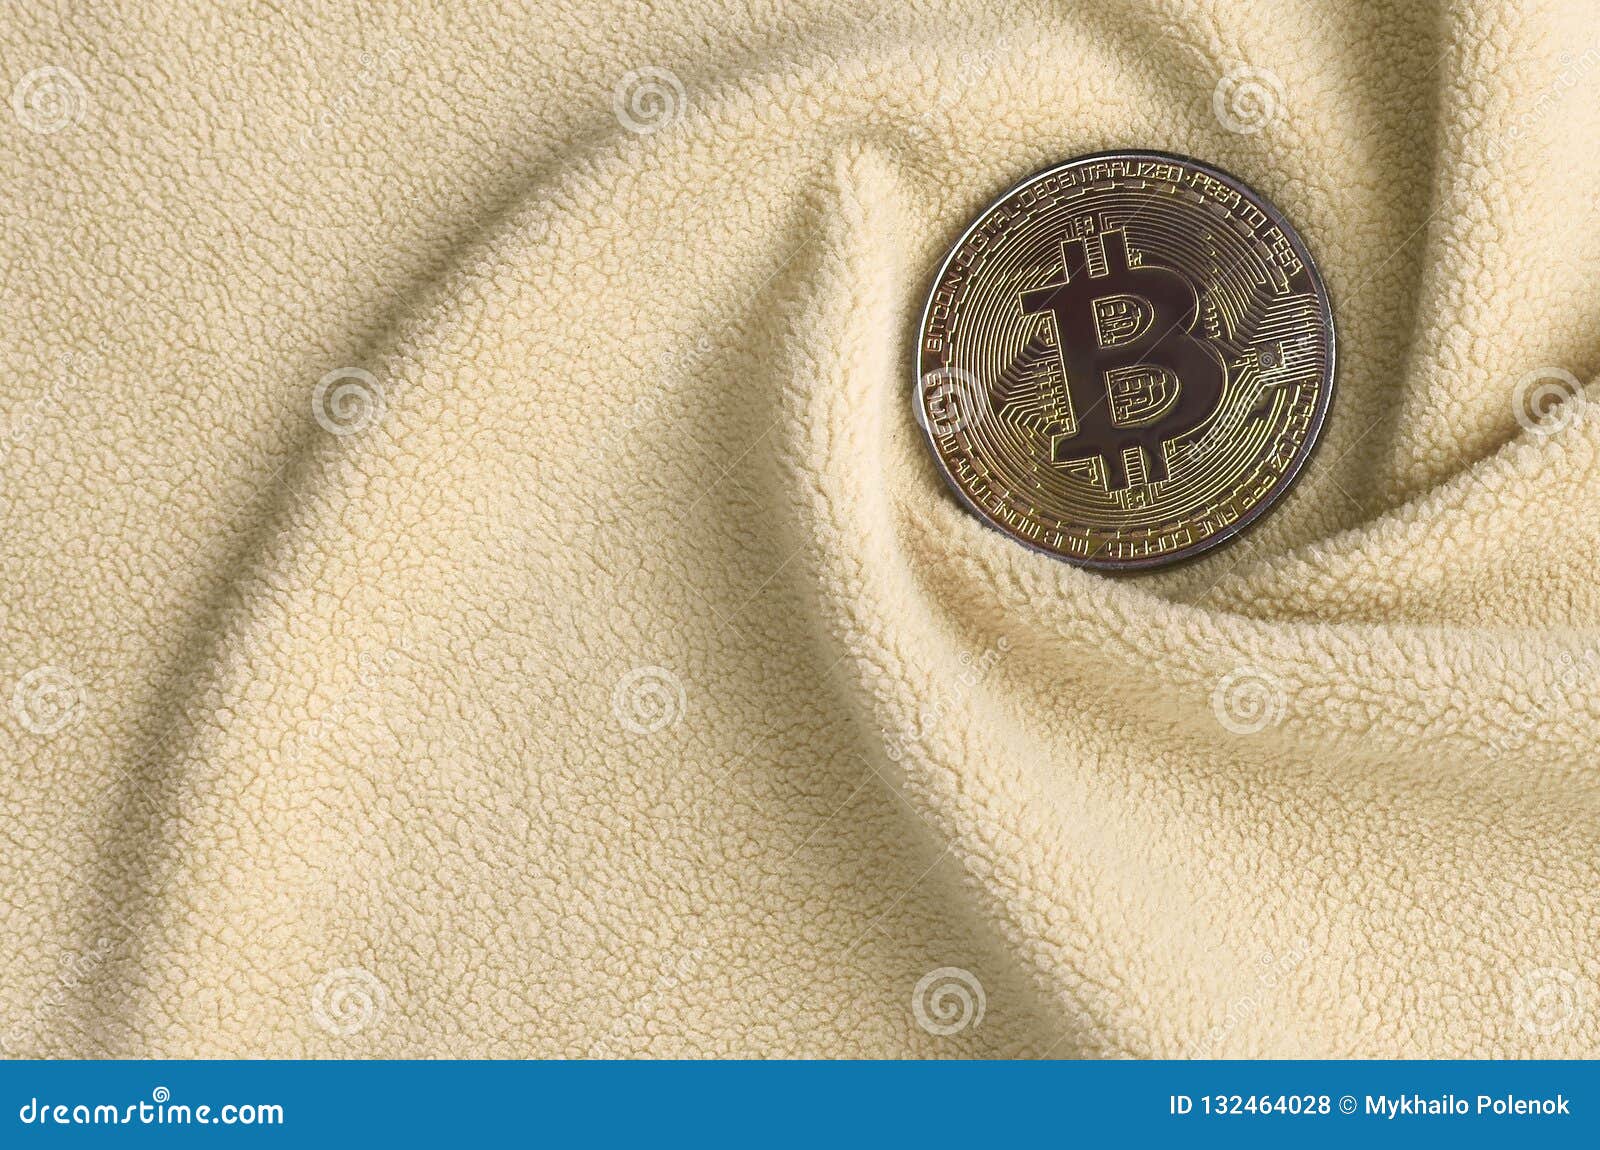 fabric bitcoin